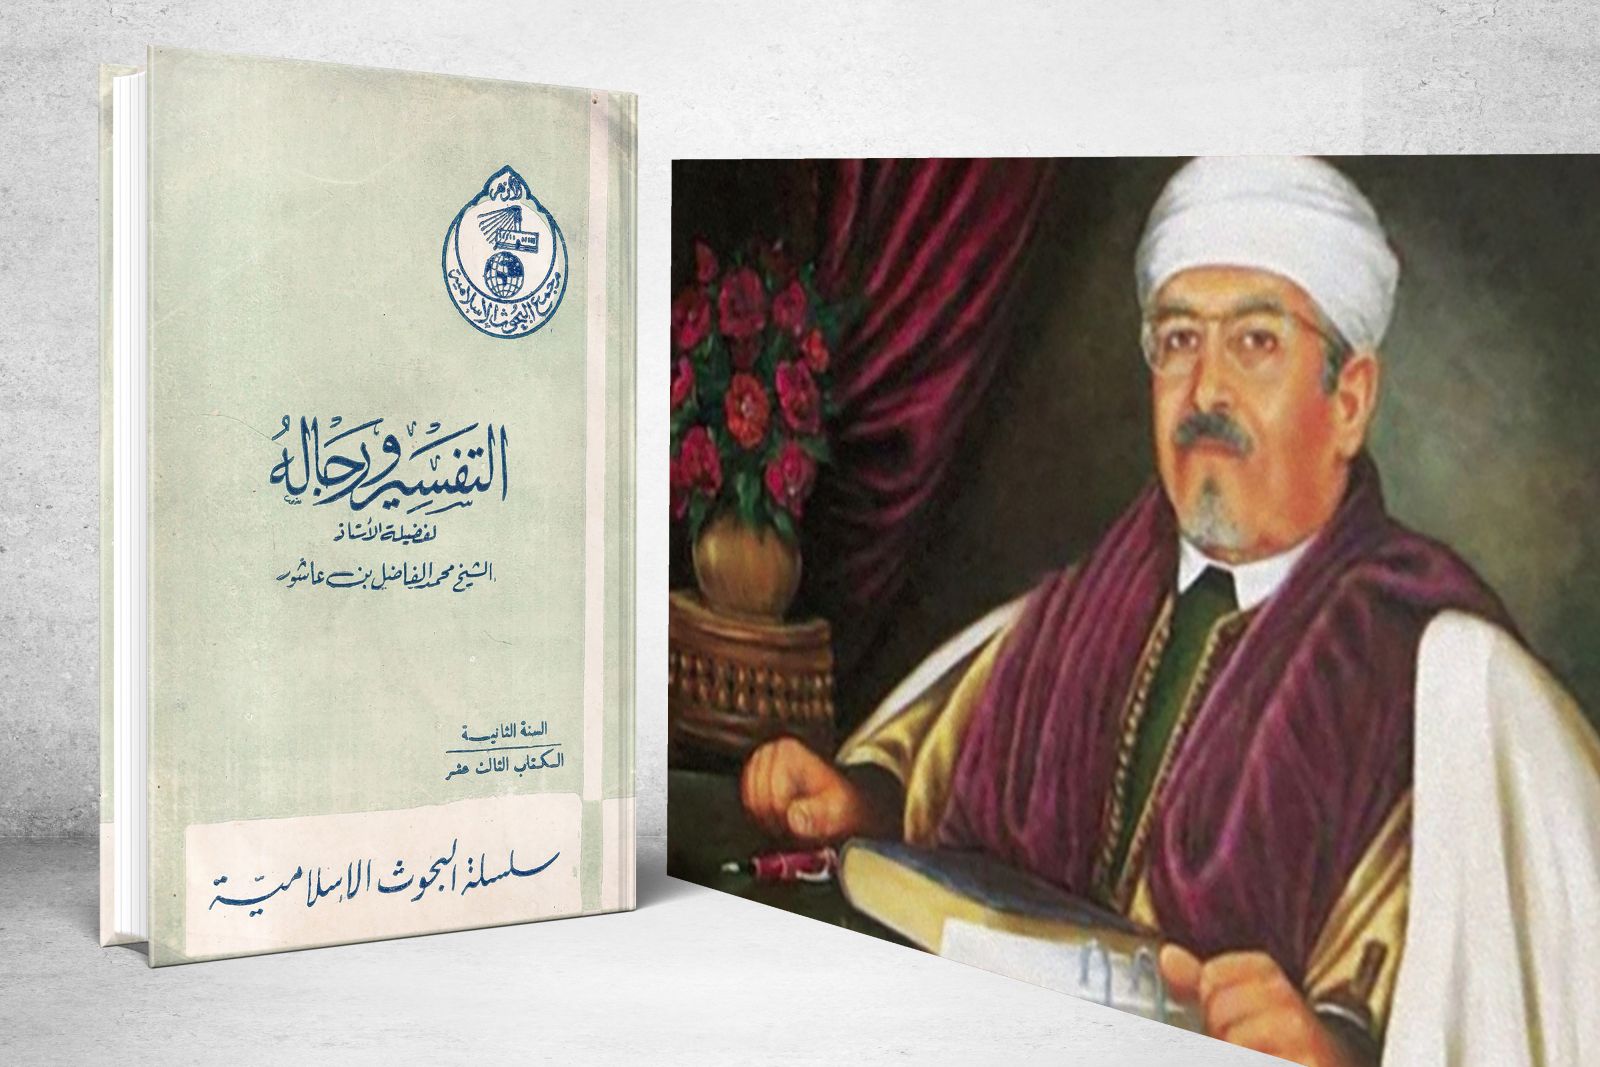 محمد الفاضل بن عاشور (1327هـ - 1390هـ)  مؤرخًا للأفكار